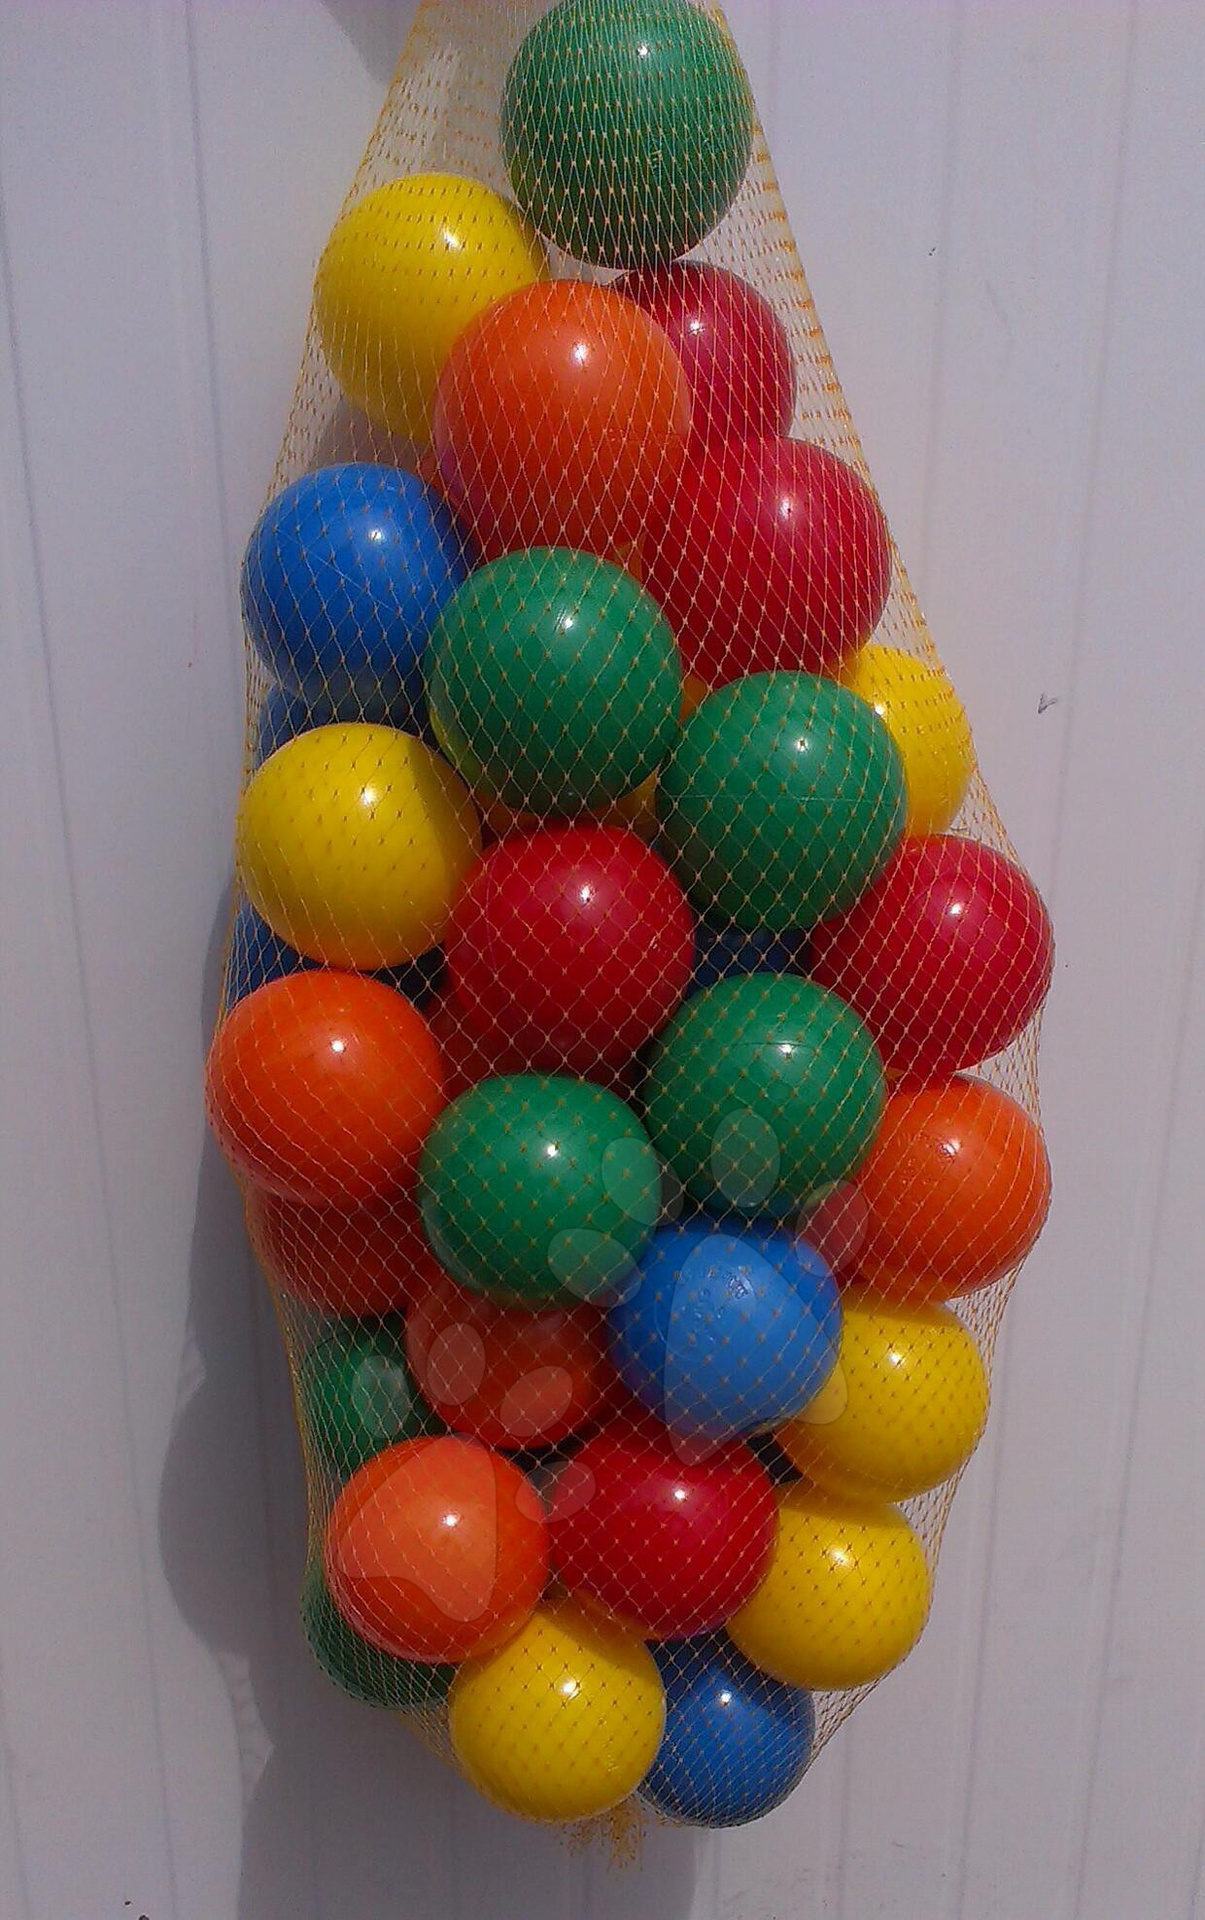 PB műanyag gyerek labdácskák 100 db 11117 színesek